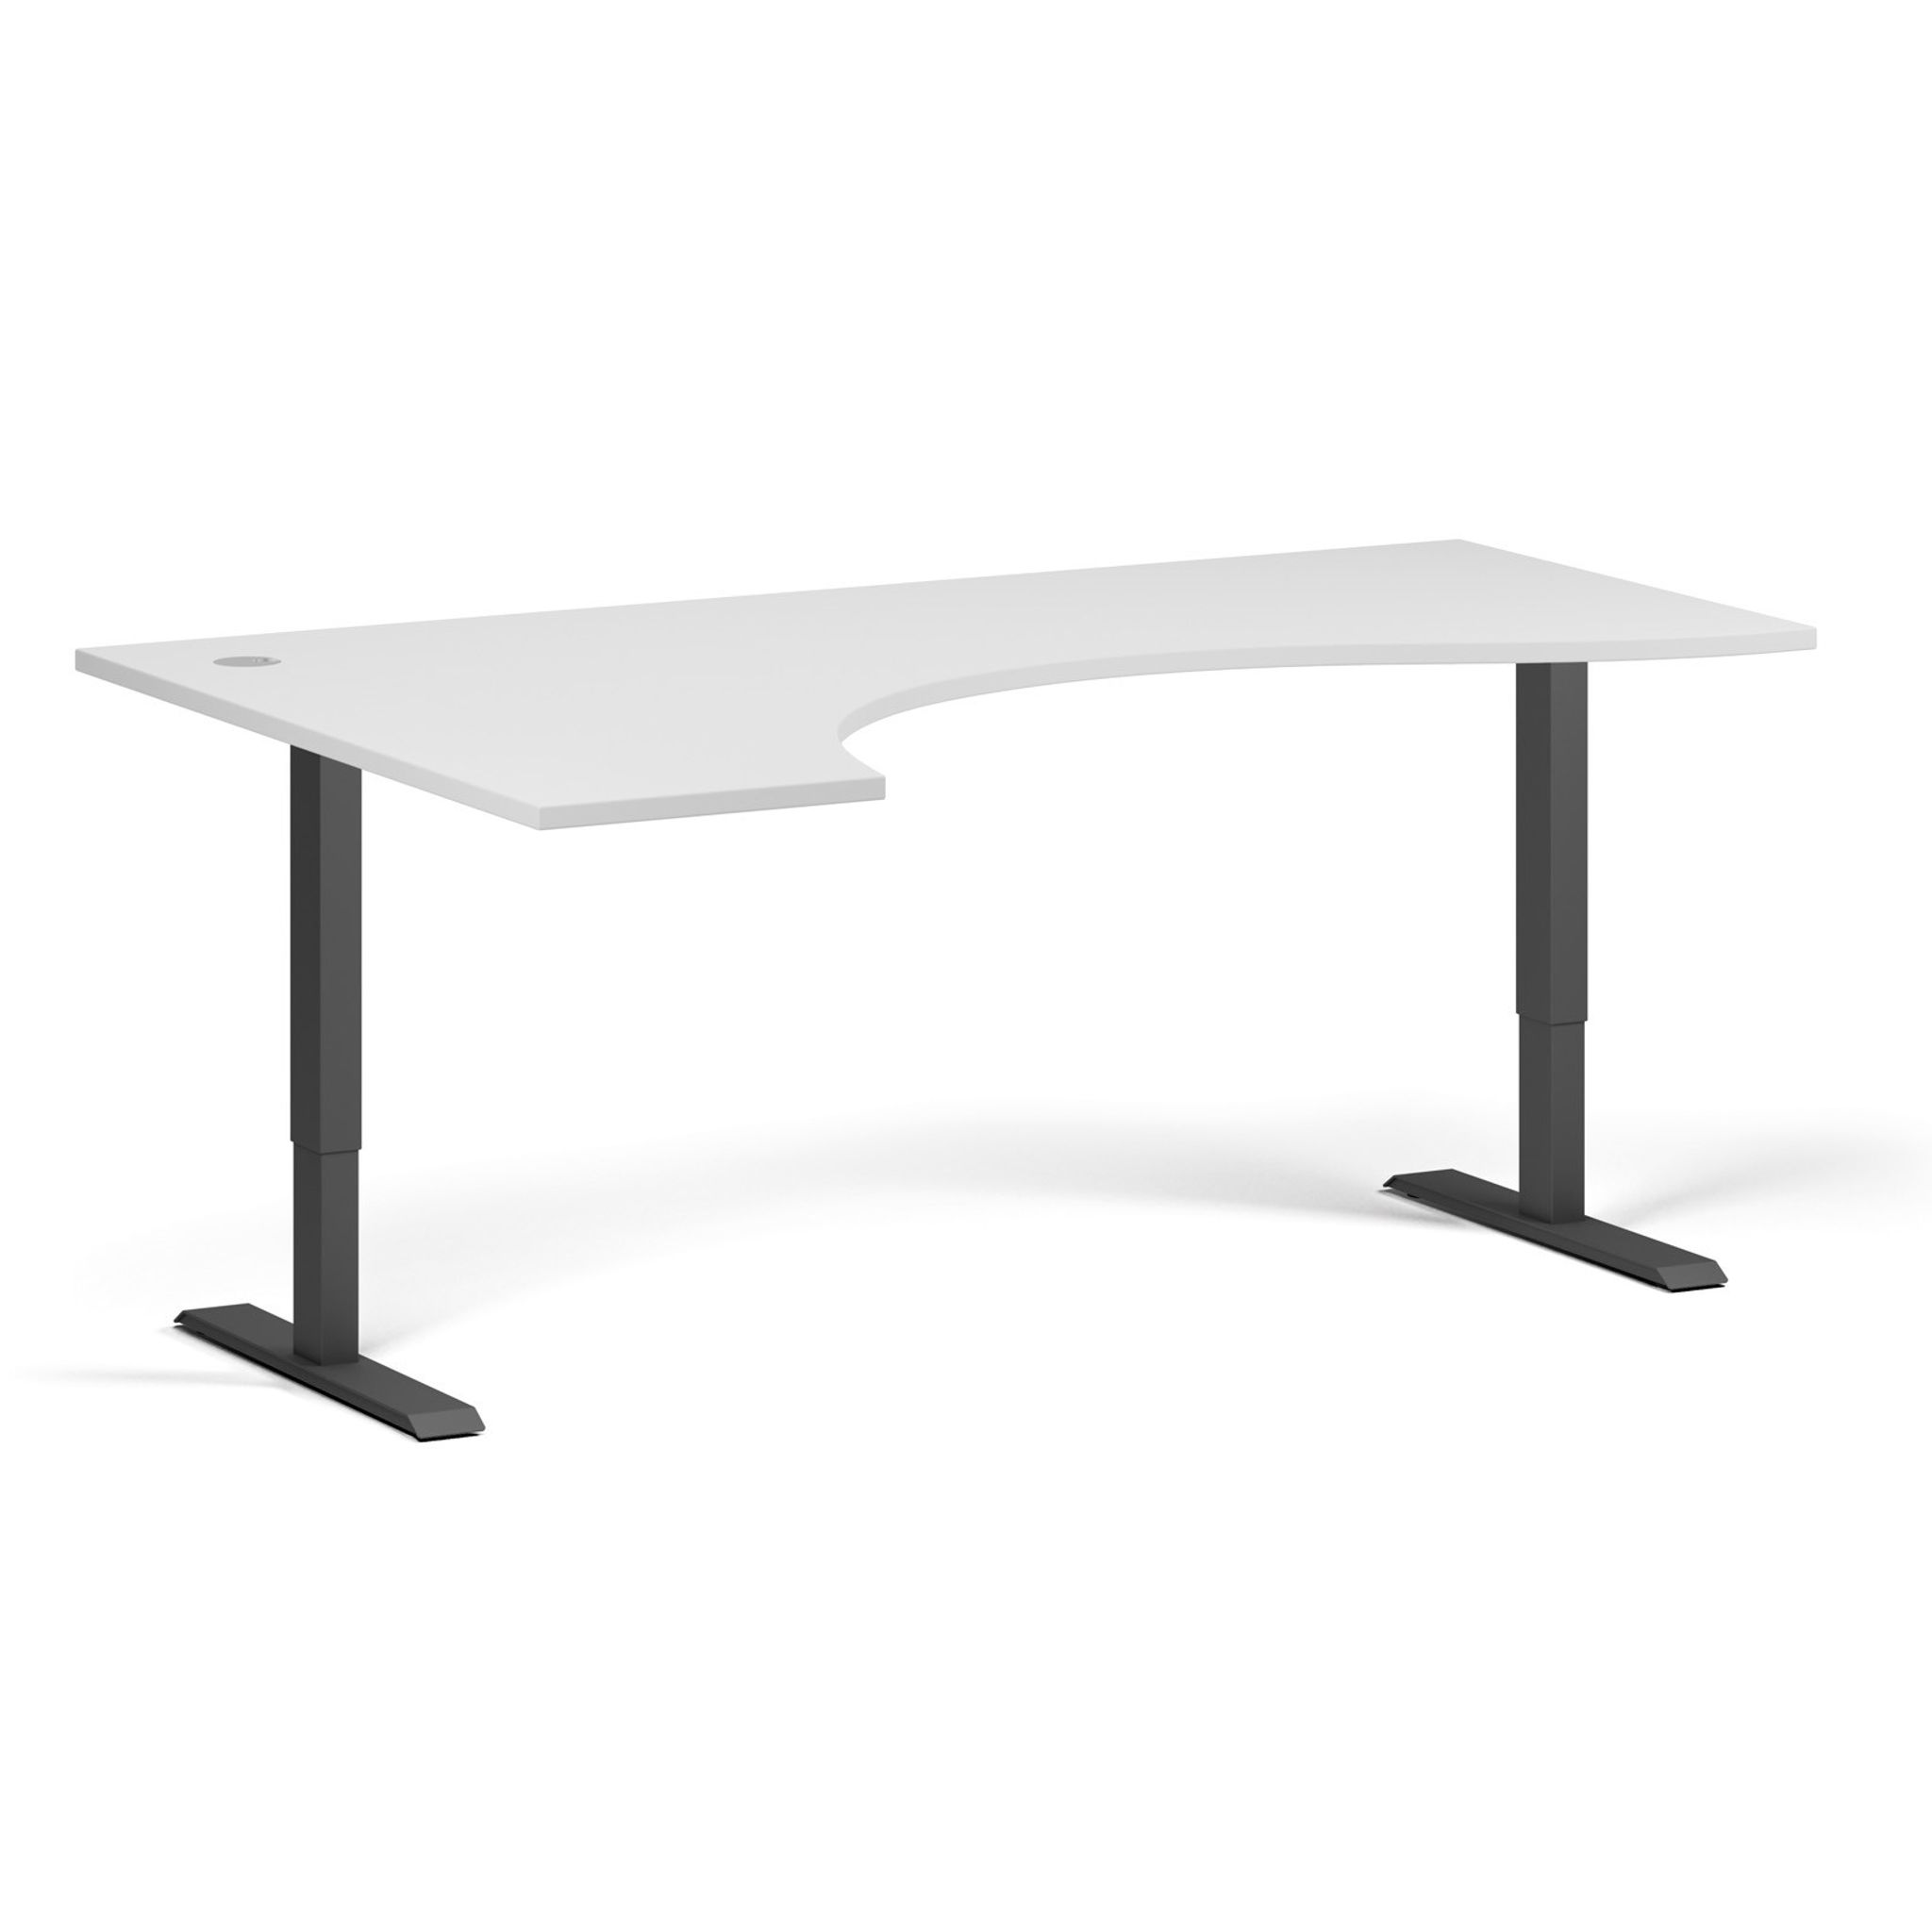 Výškově nastavitelný stůl, 2 motory, 745 - 1215 mm, ergonomický levý, deska 1800 x 1200 mm, černá podnož, bílá